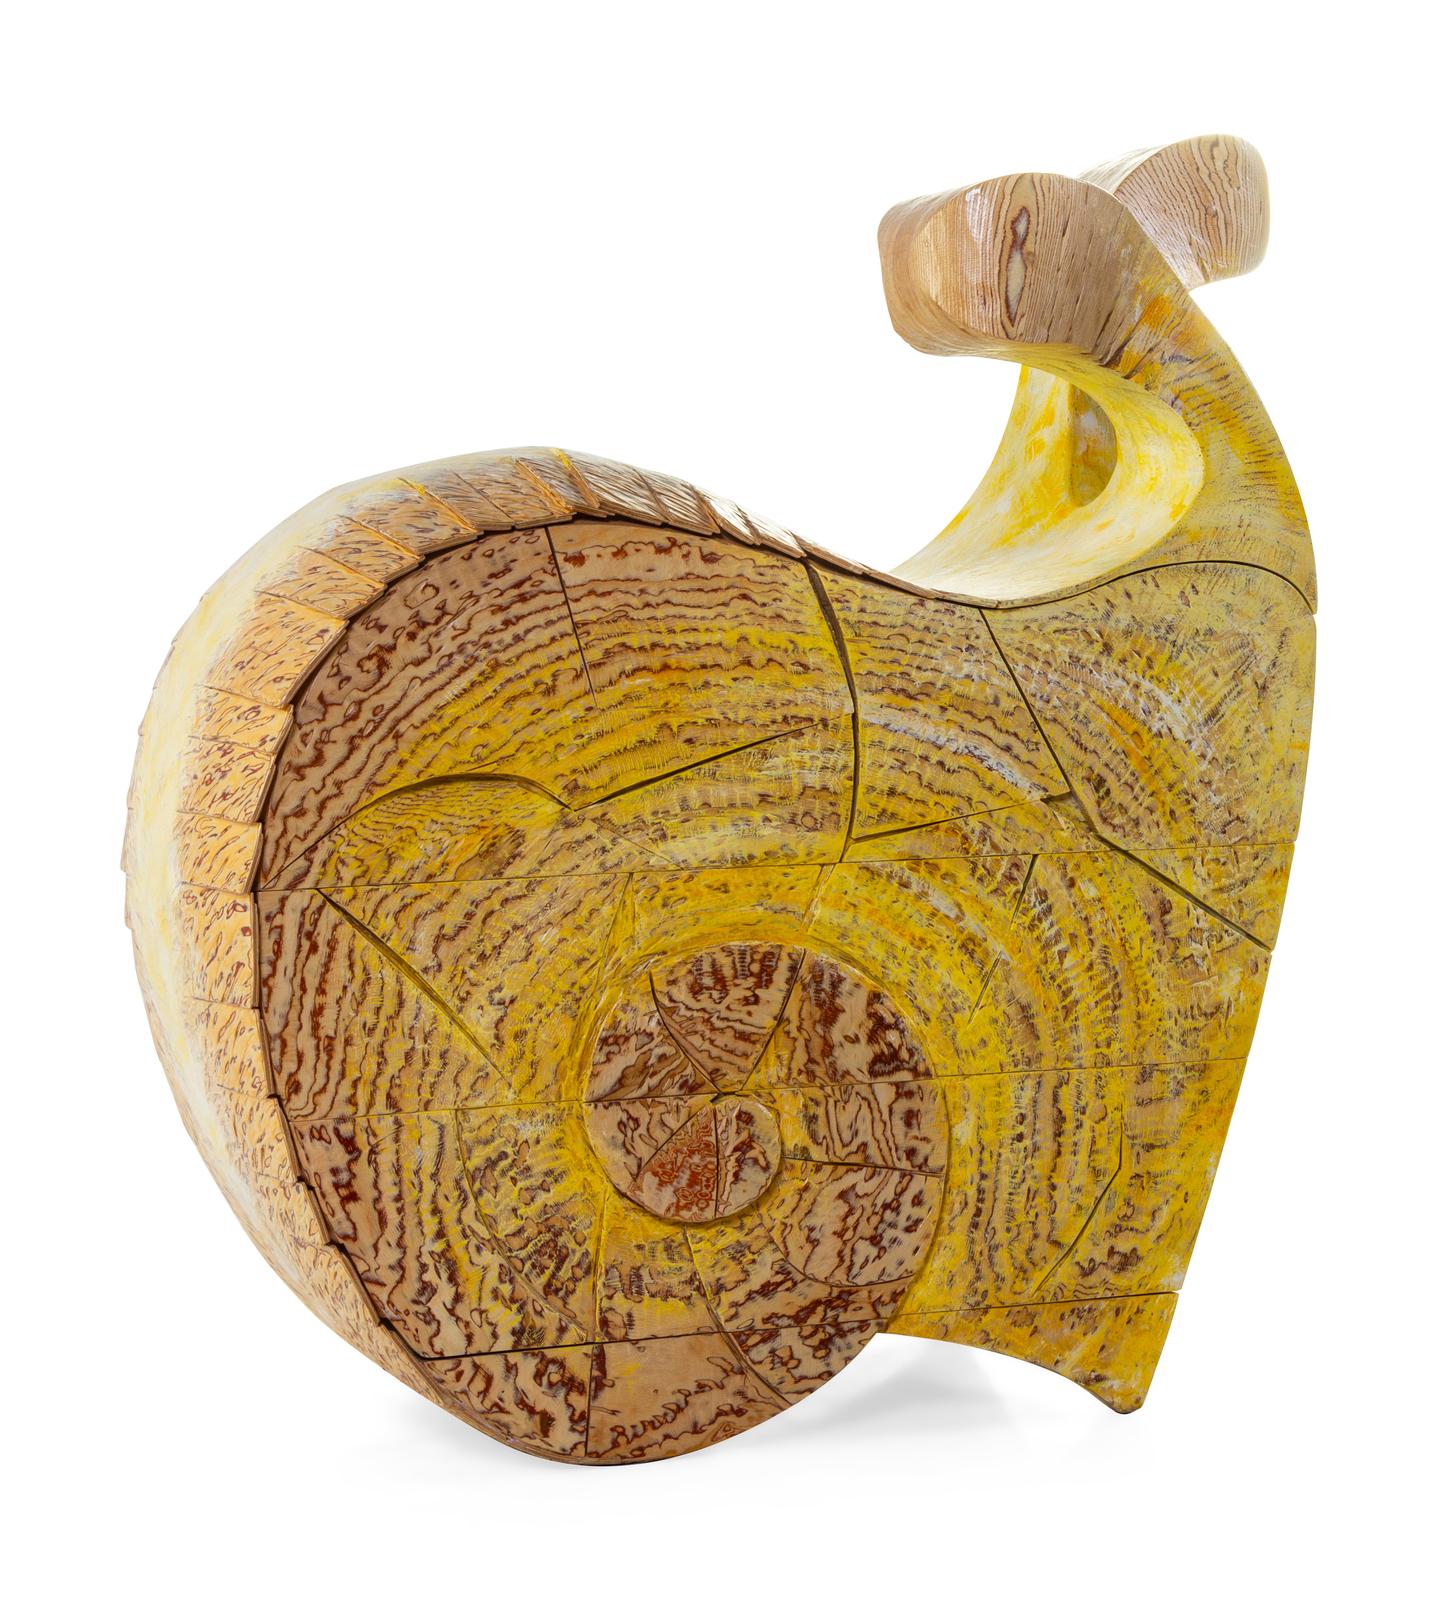 Coffre à escargots Yves Boucard, fantaisiste et amusant. Commode en bois et peinte à la main. 

Yves Boucard (Suisse, né en 1953)

H 51 x L 53 x P 30 pouces